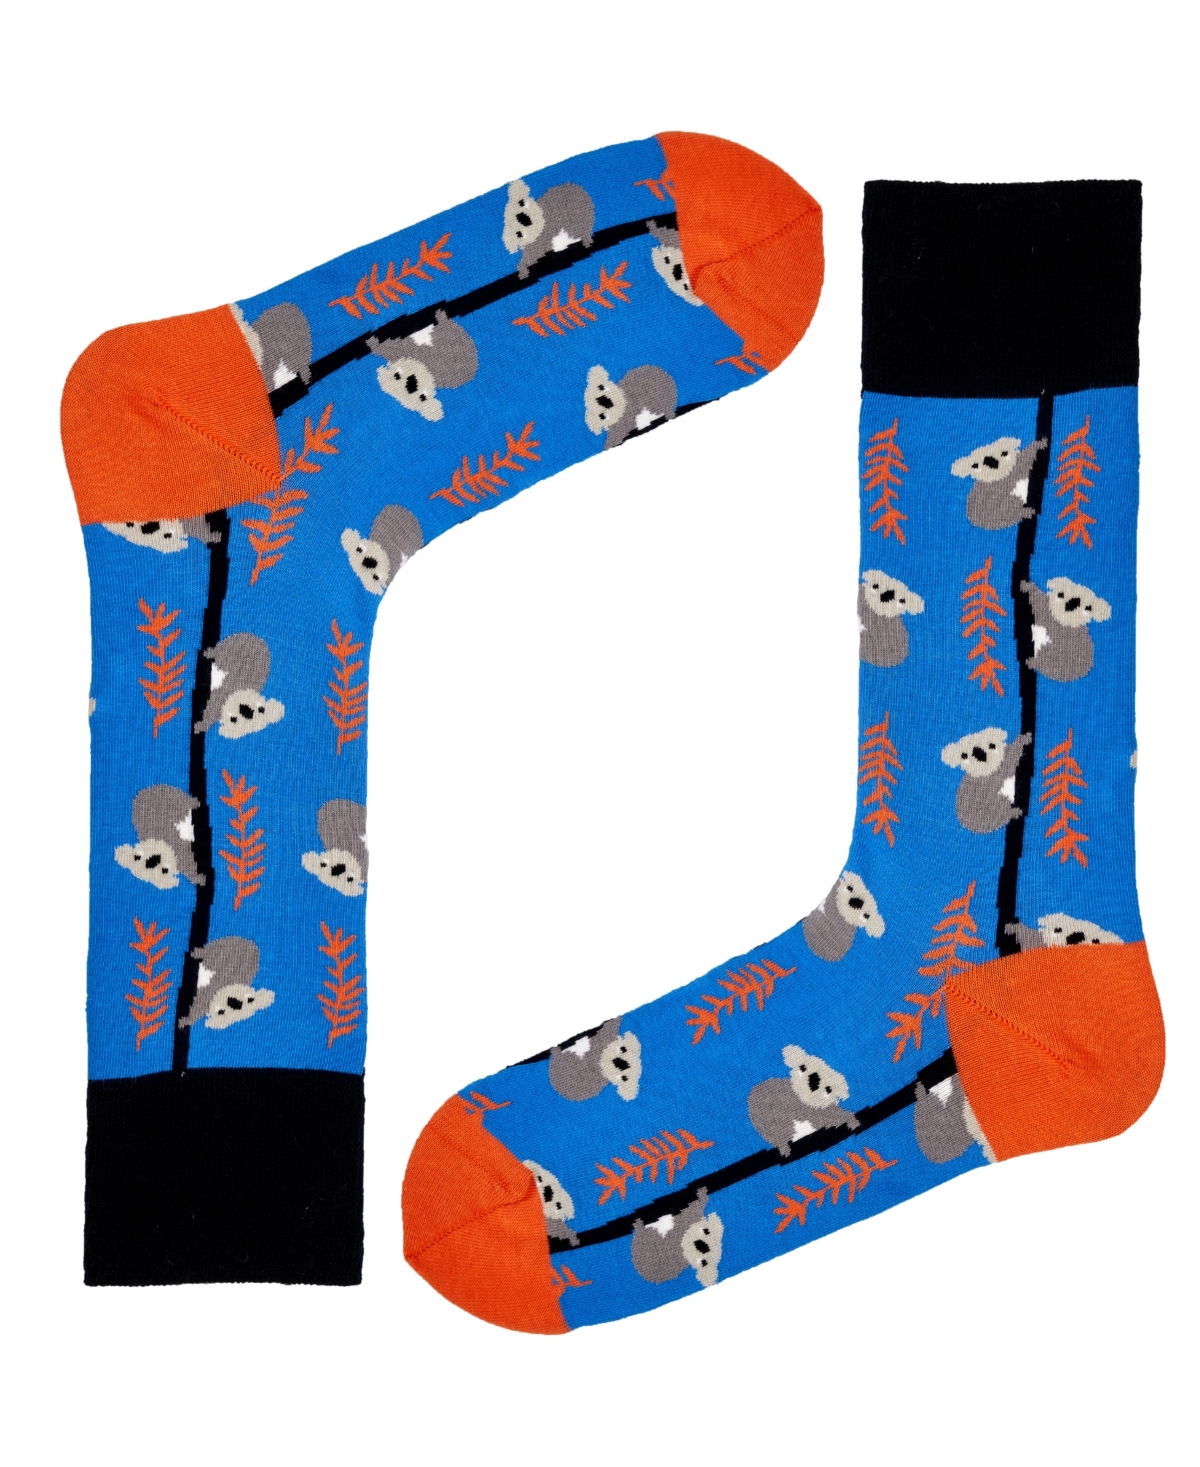 Men's Koala Novelty Colorful Unisex Crew Socks with Seamless Toe Design, Pack of 1 - Blue